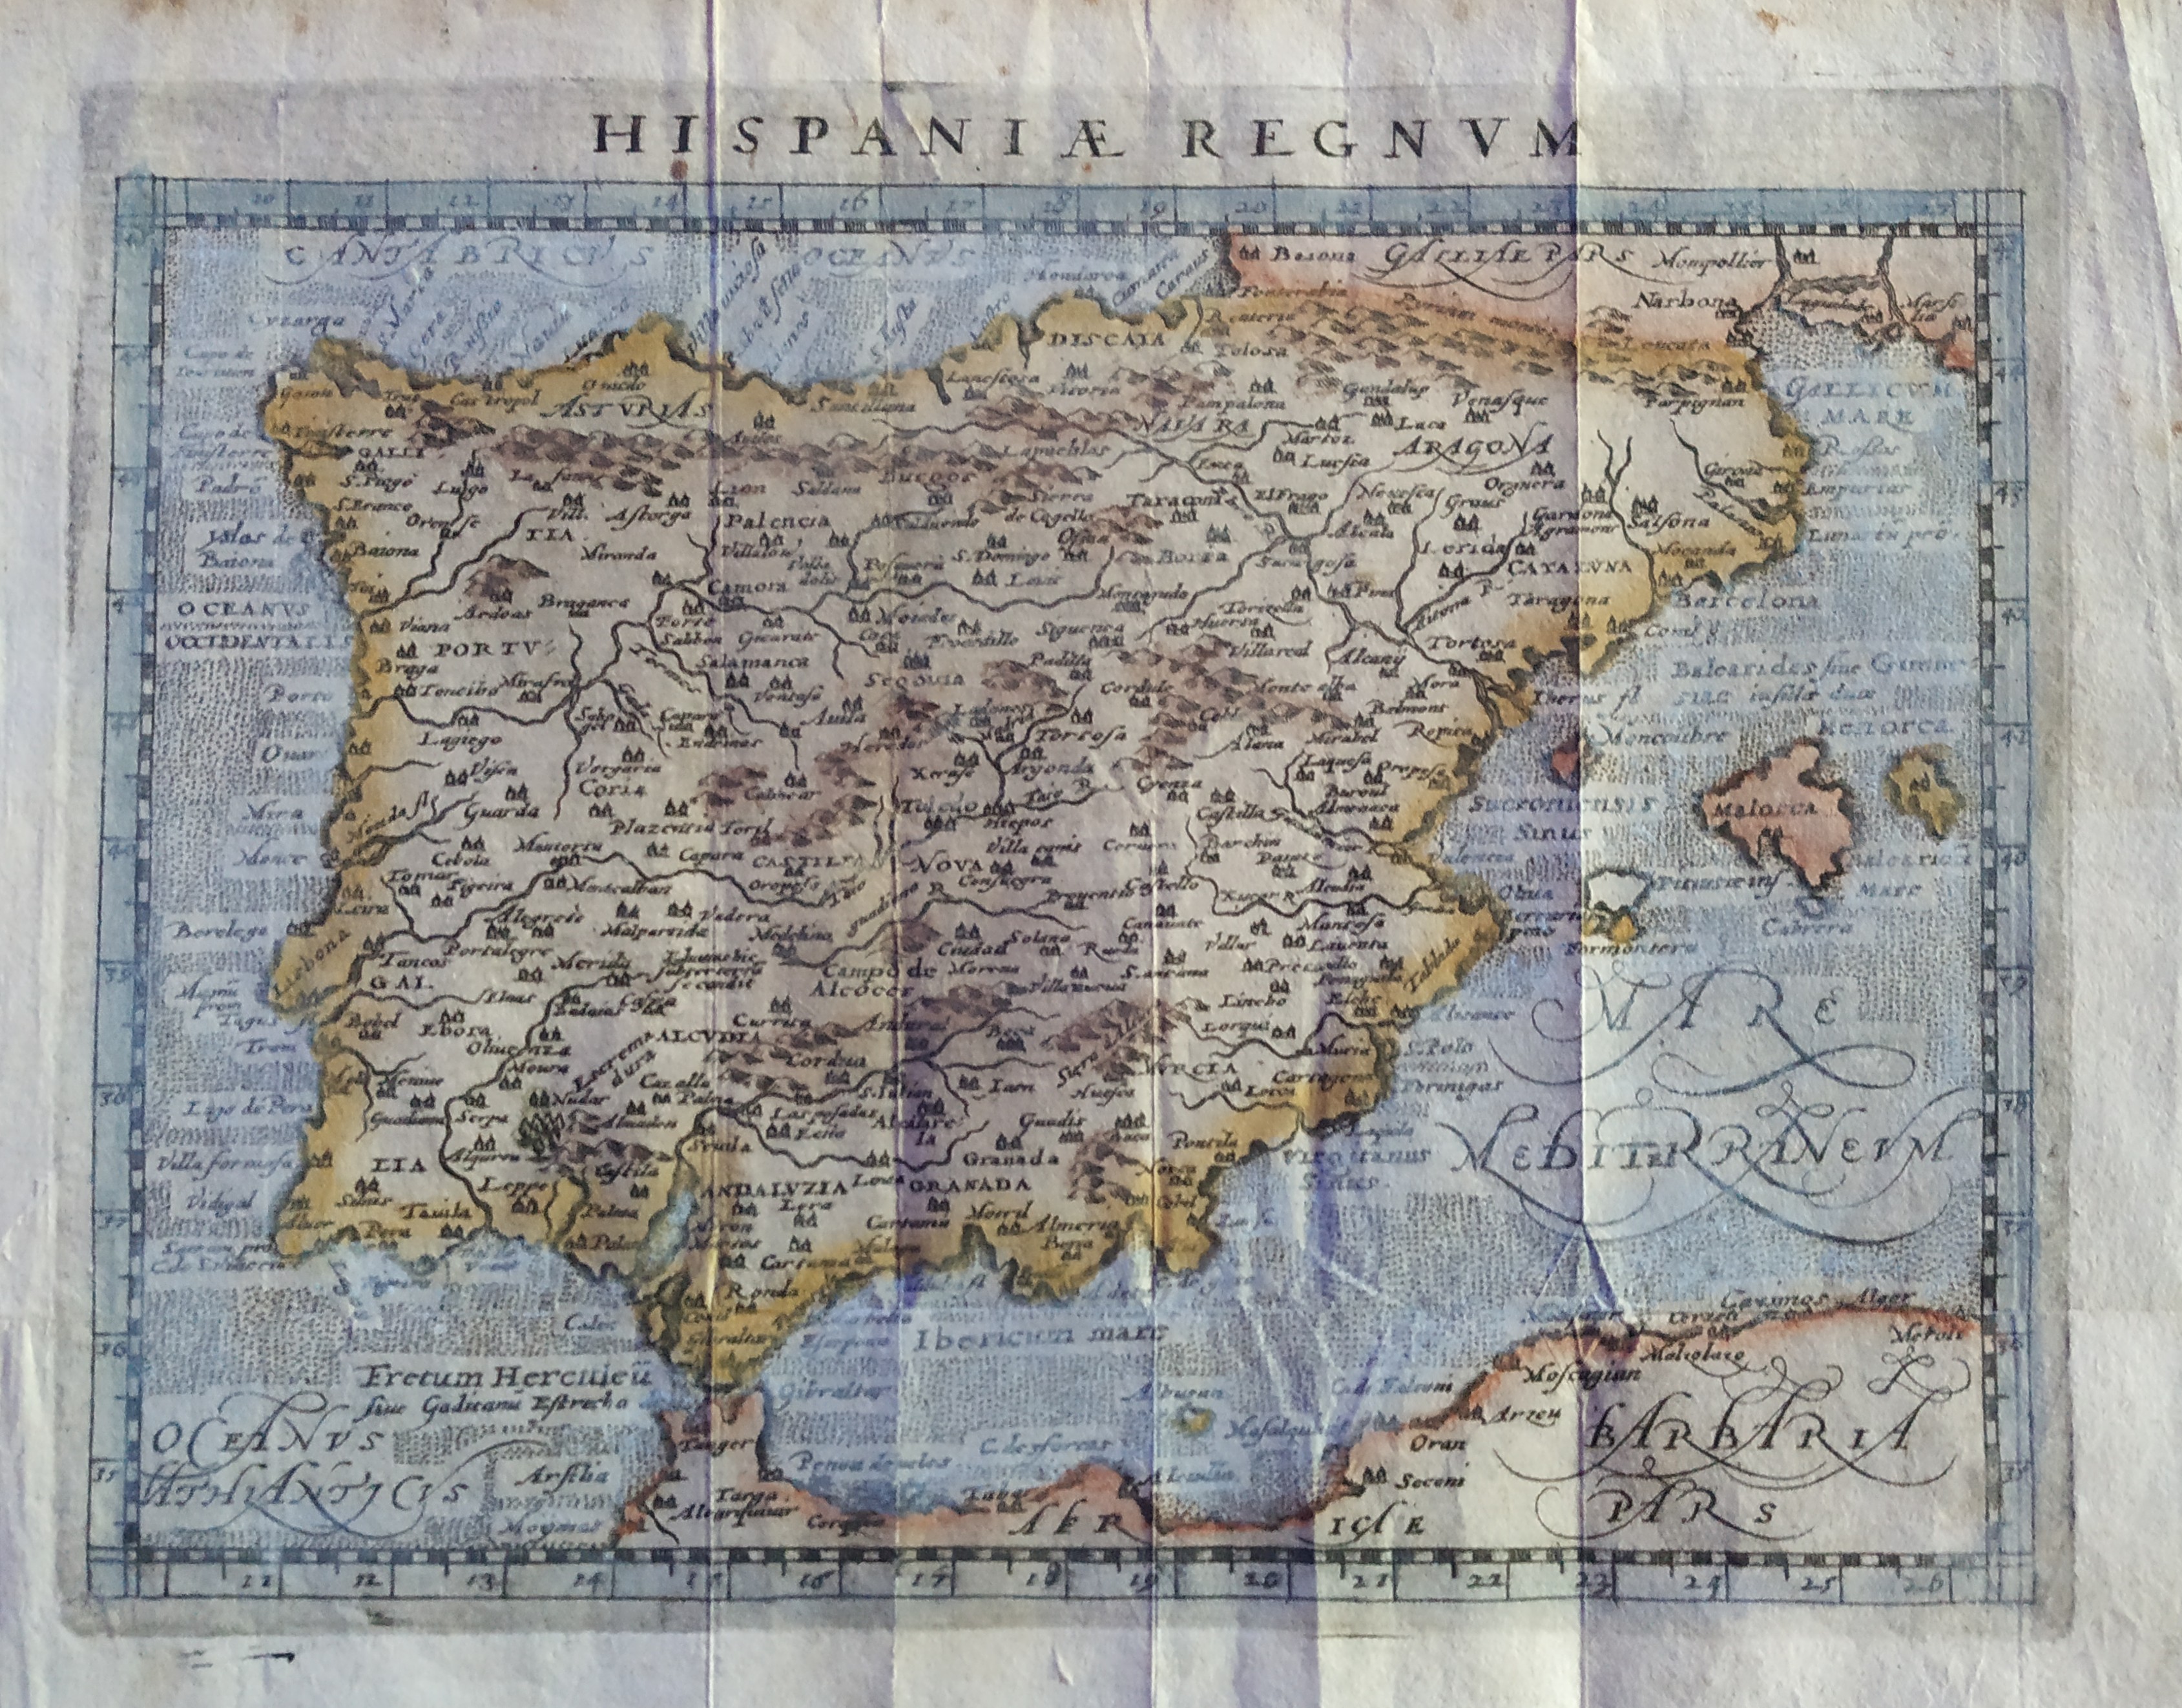 Hispania Regnum